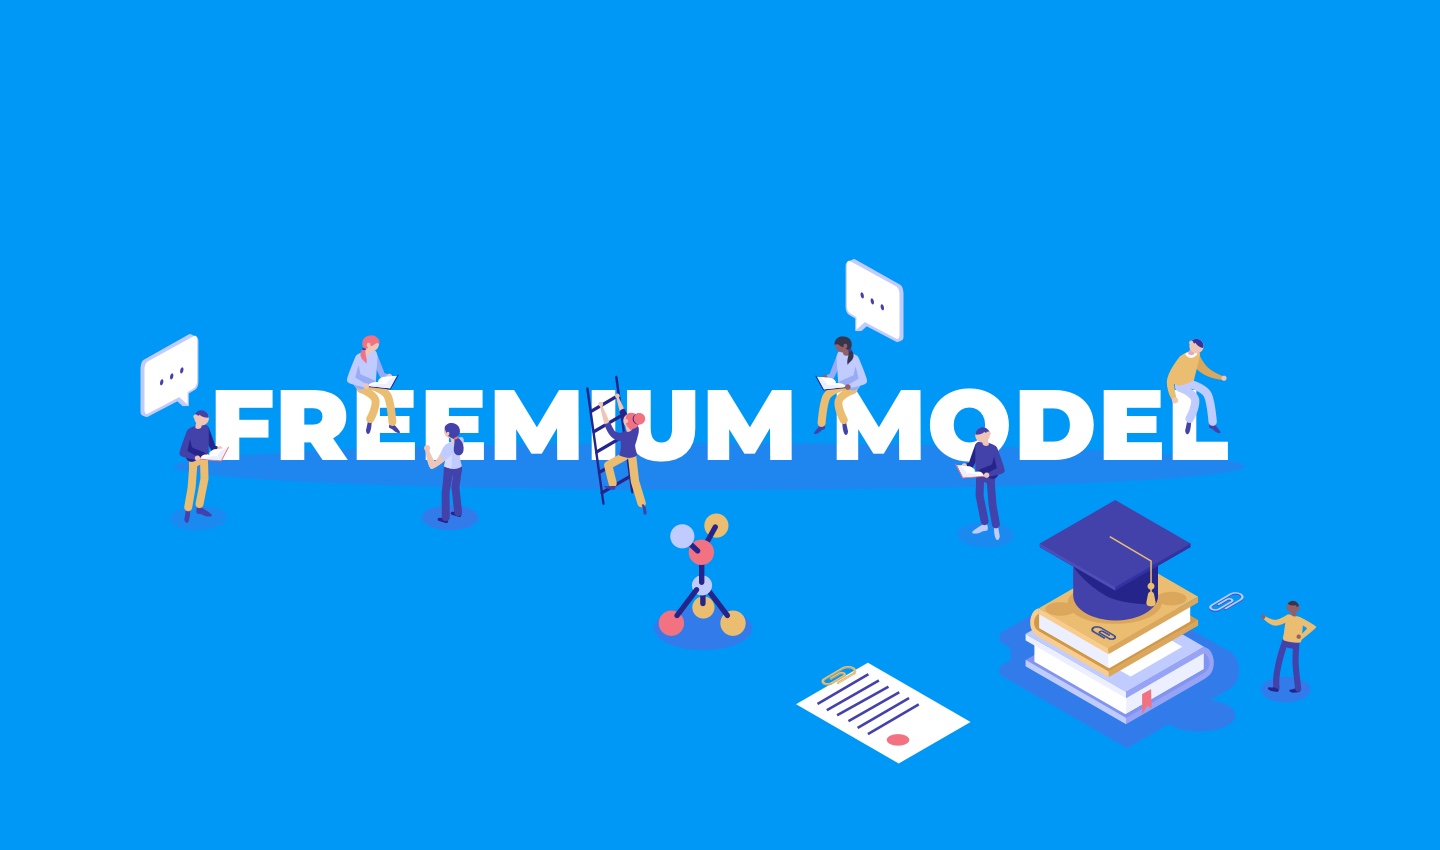 Freemium model